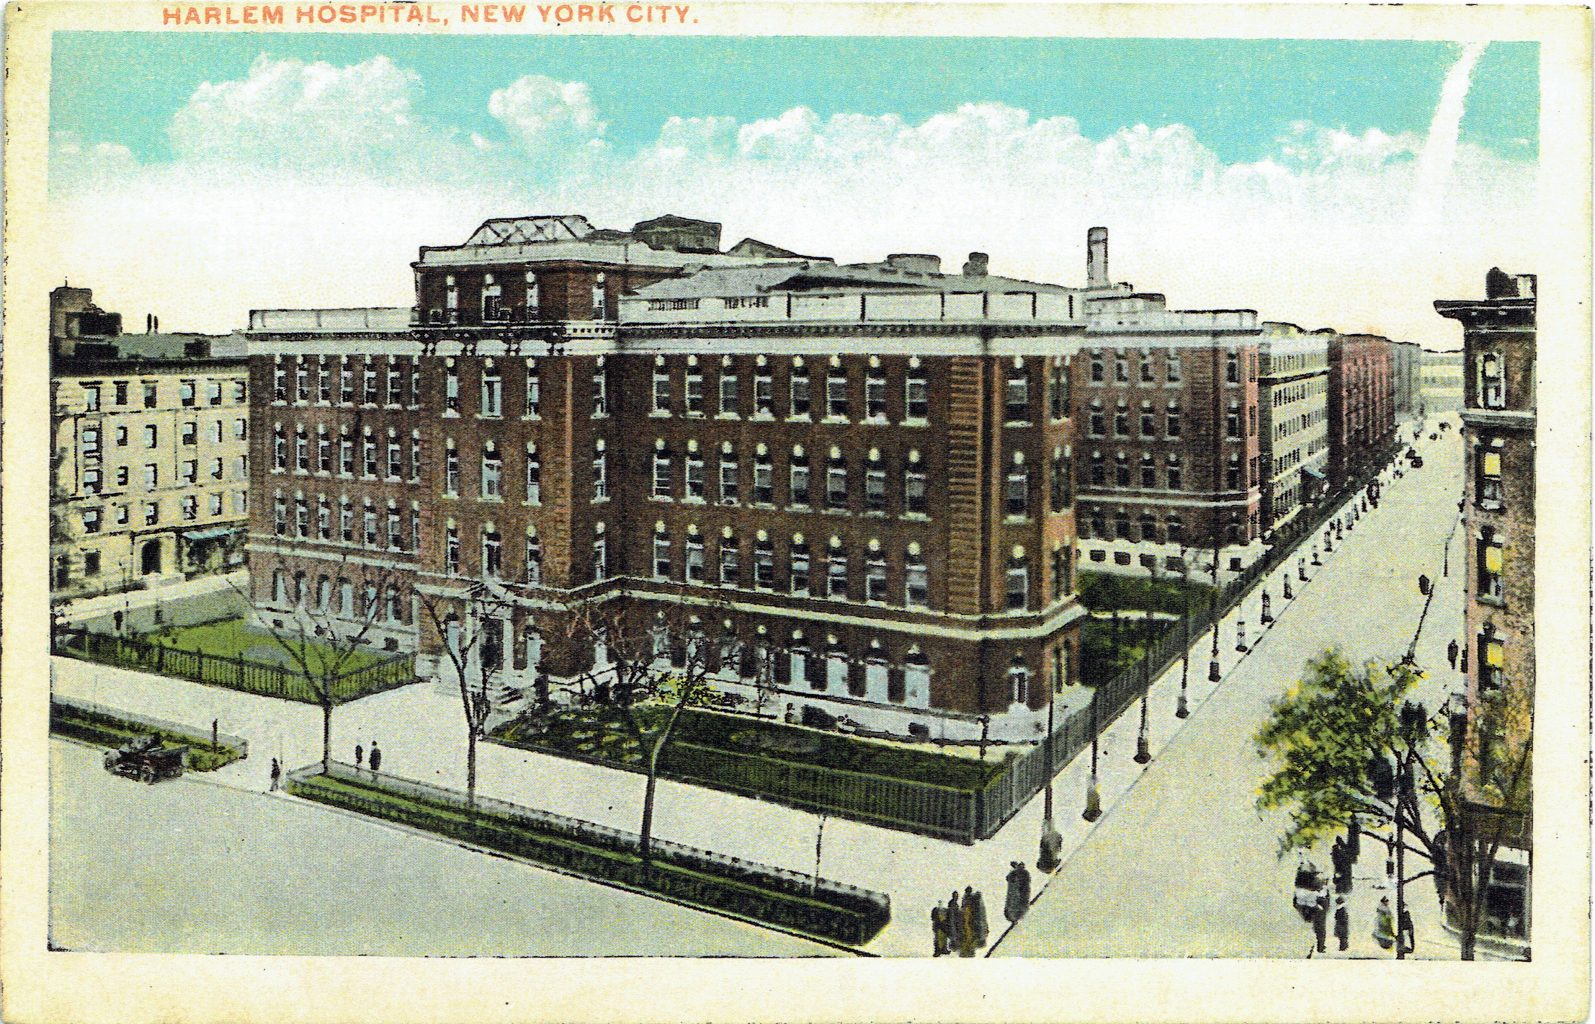 Harlem Hospital, New York City